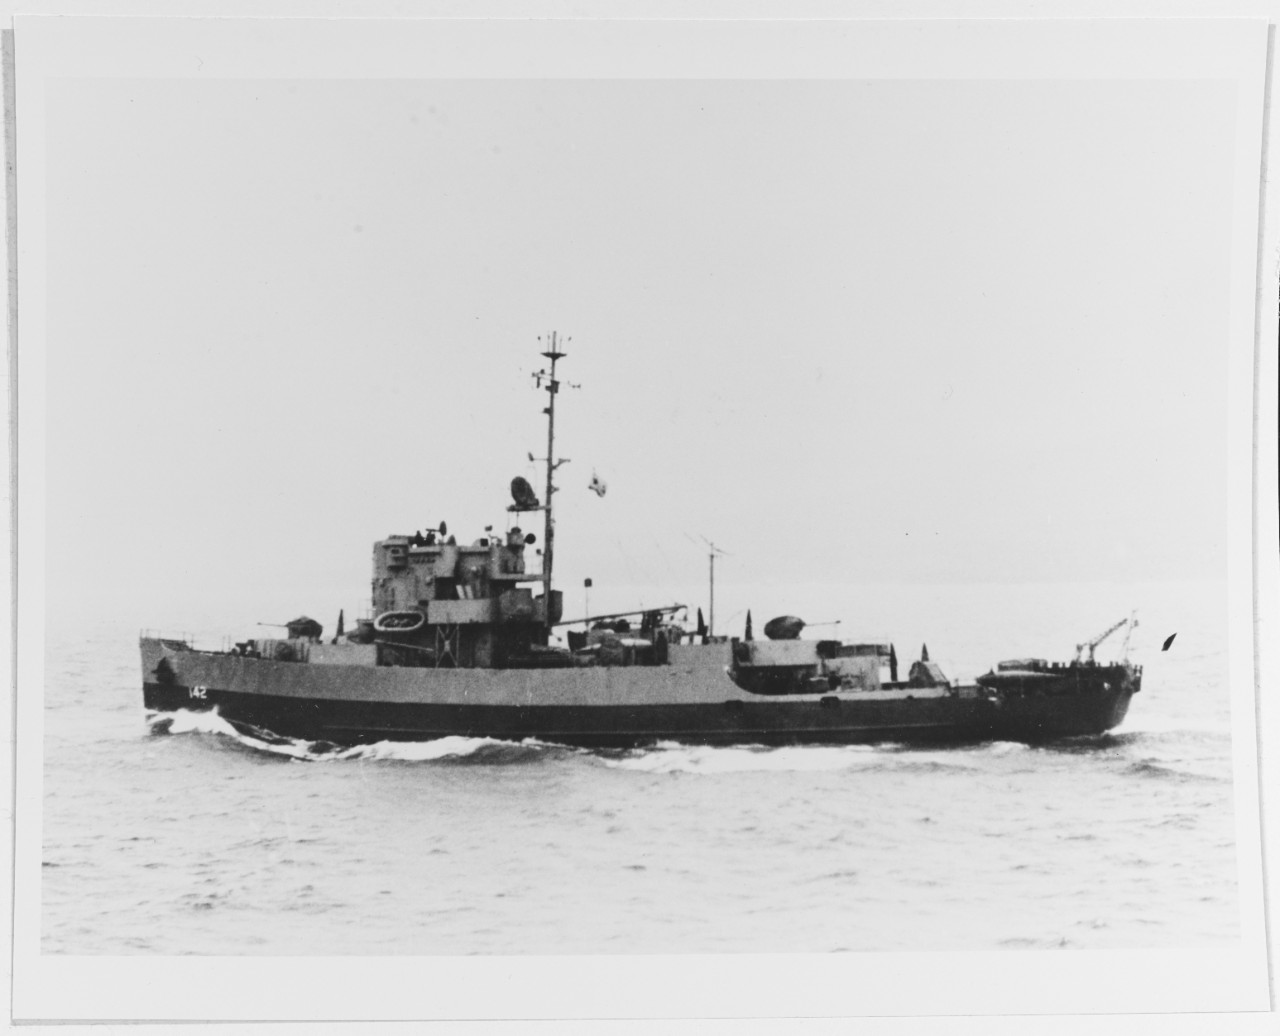 USS APEX (AM-142)